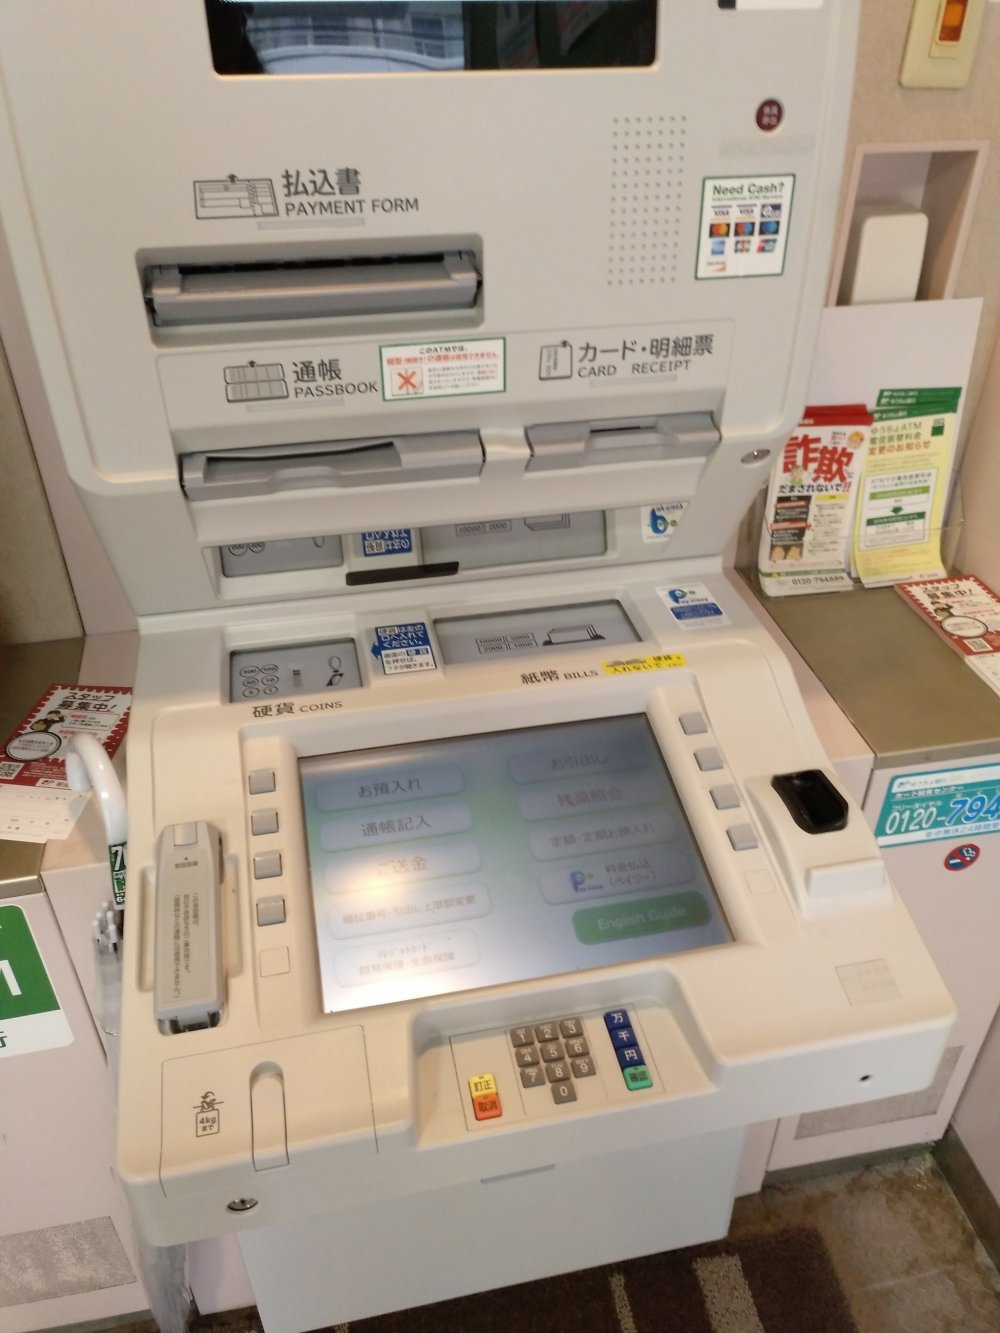 A zona onde está a máquina ATM é geralmente separada do resto do balcão dos correios e tem apenas uma ou duas máquinas como esta